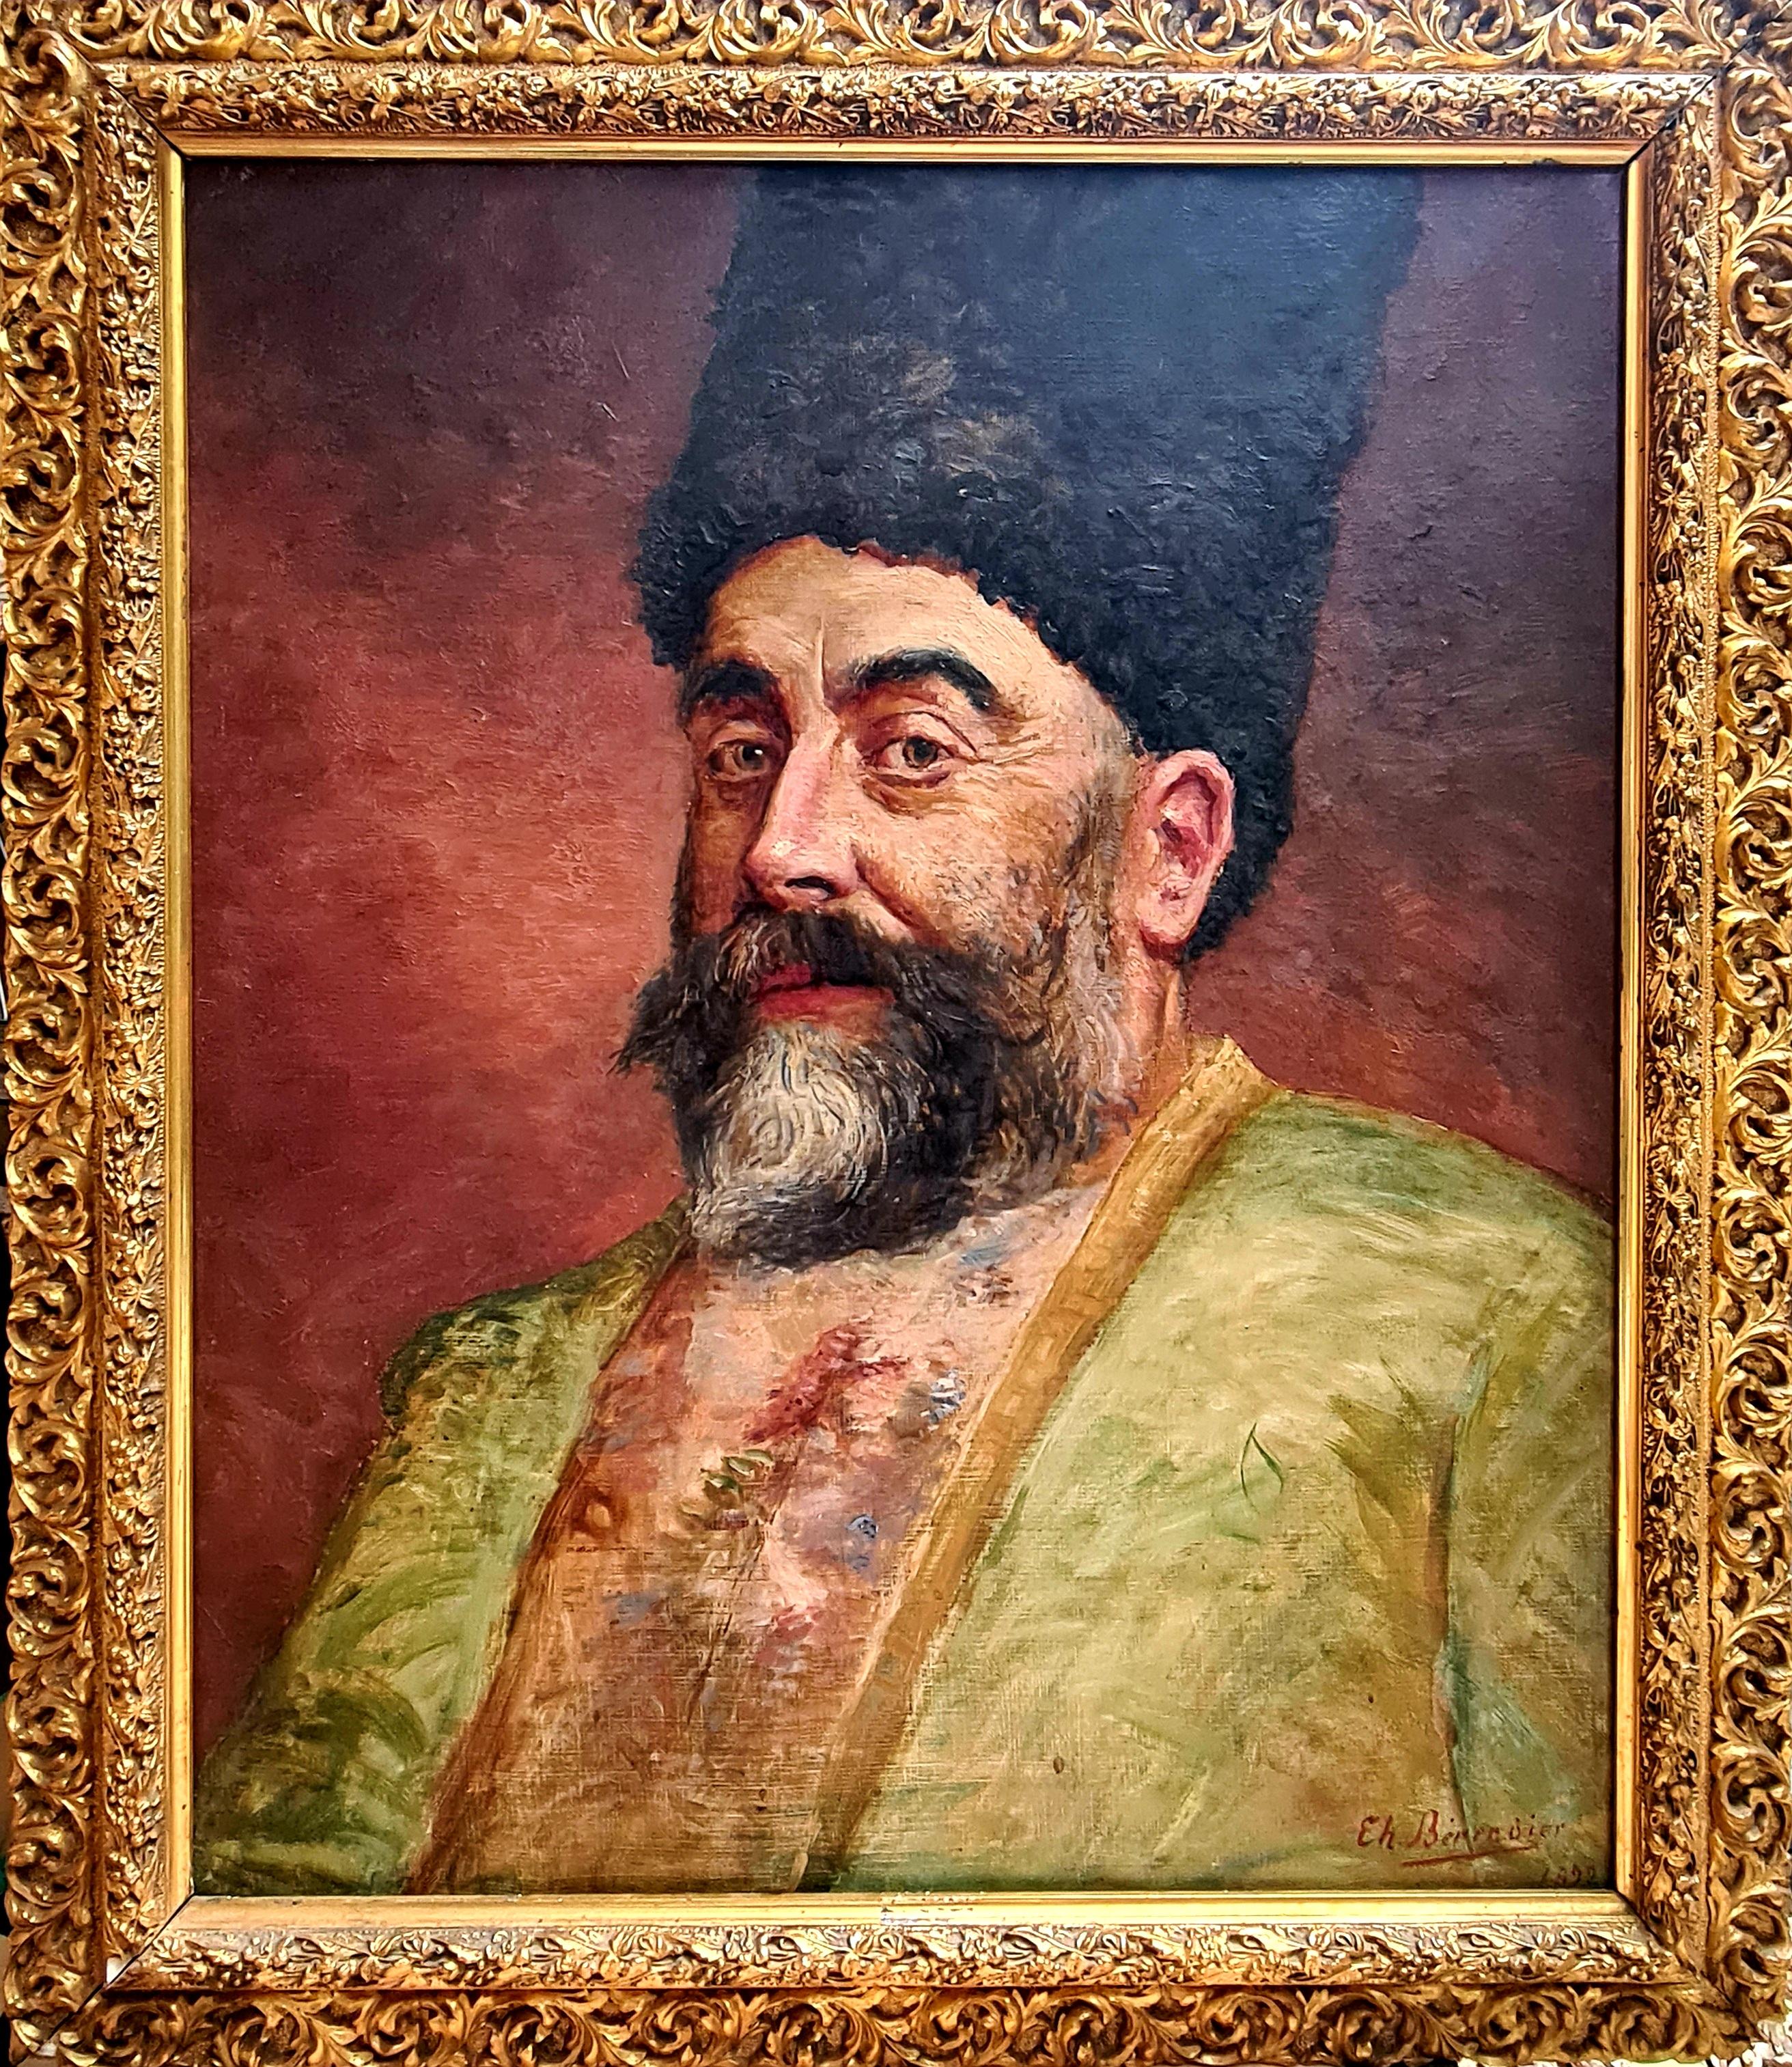 Figurative Painting Théophile Bérengier - Papakha, un noble pré révolutionnaire des Caucases